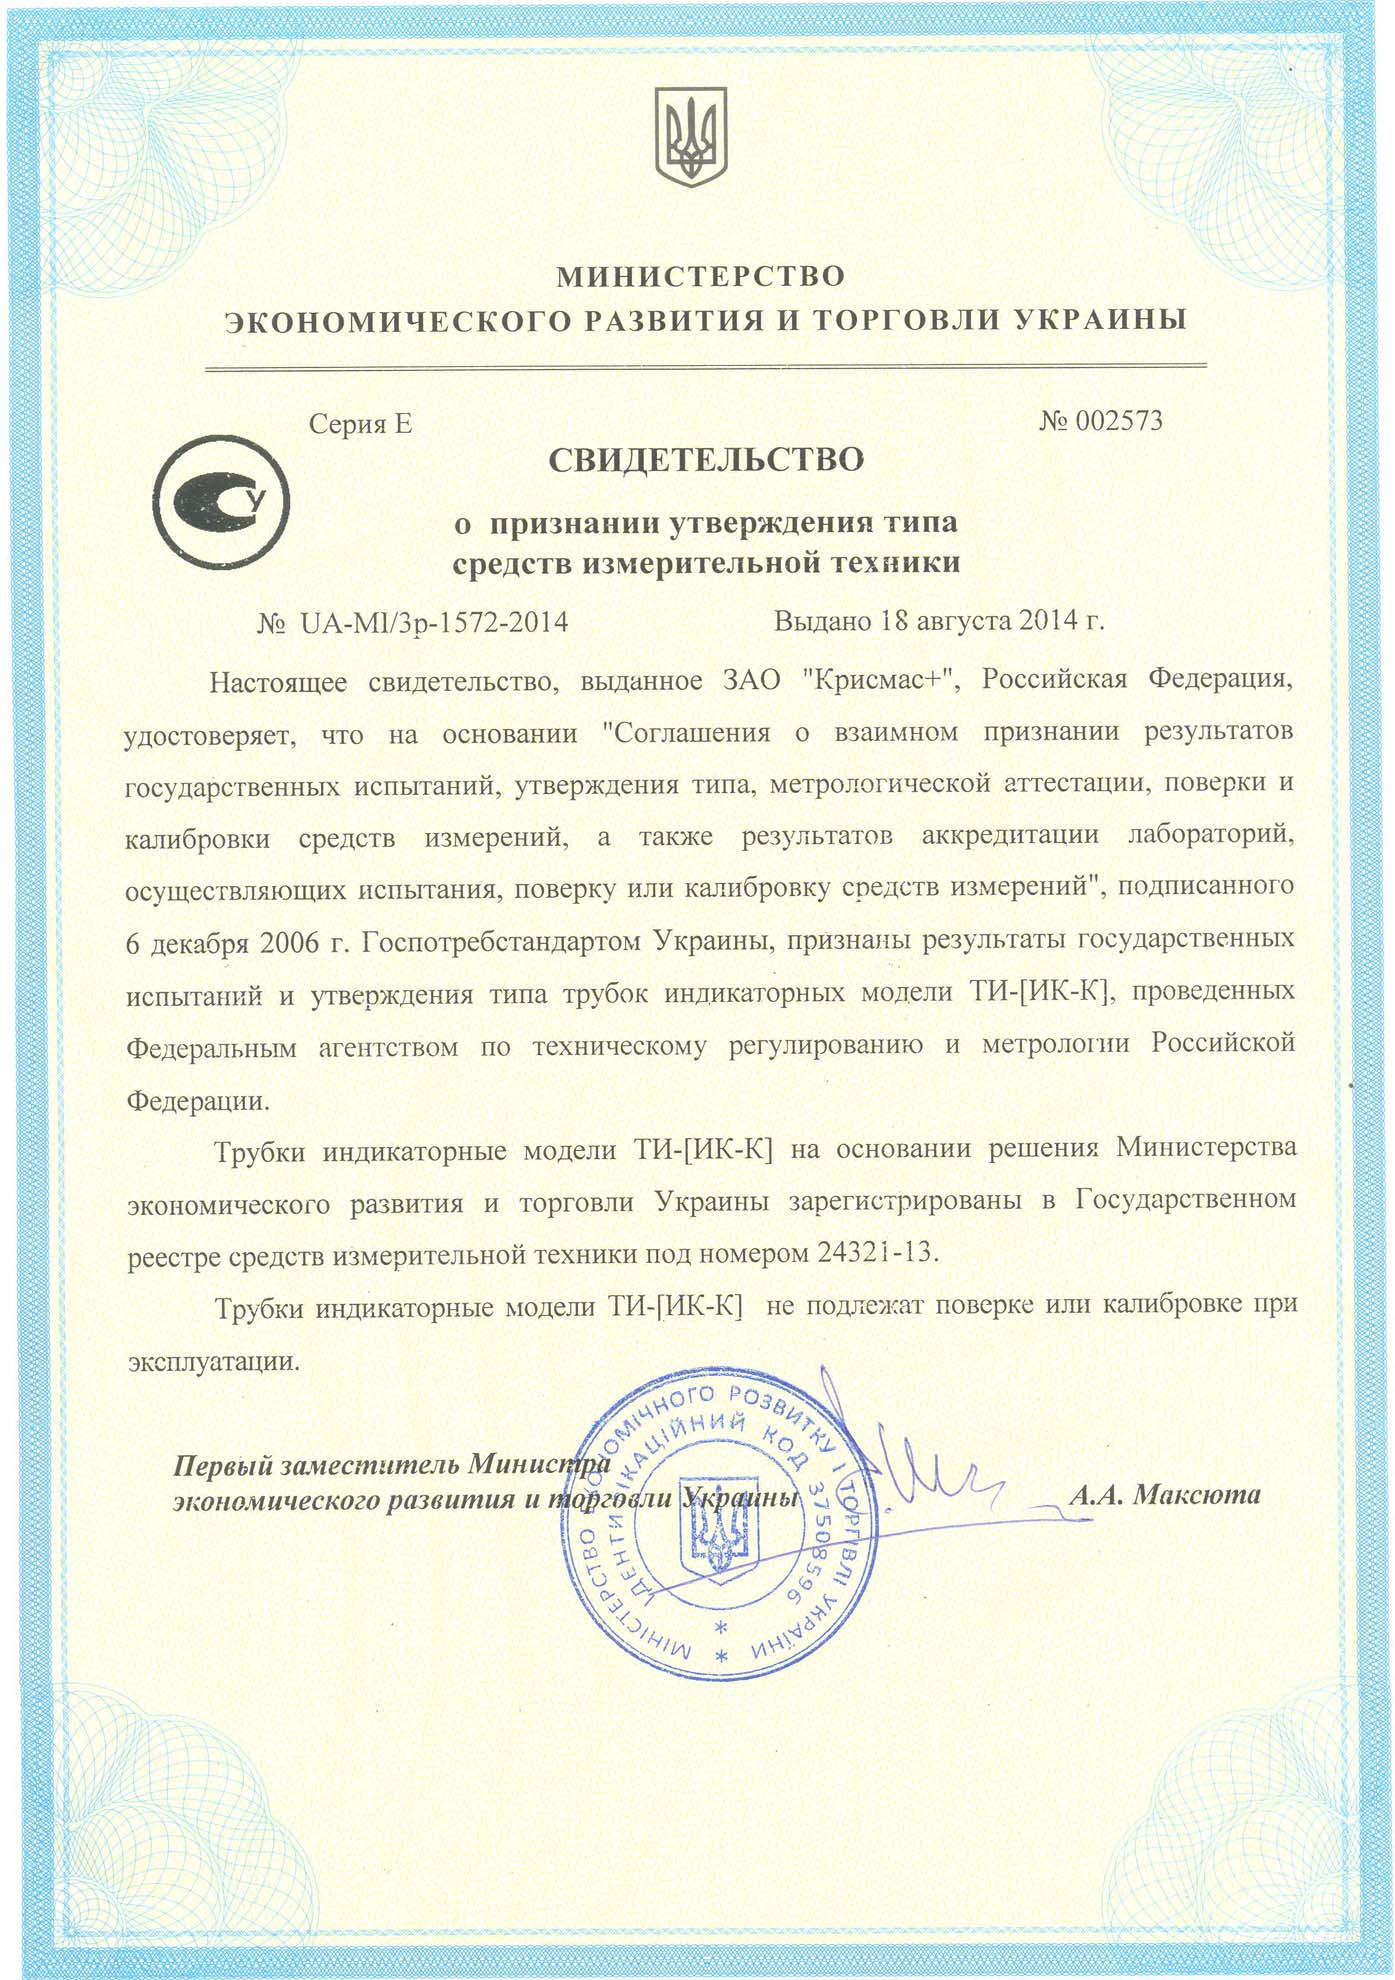 На все индикаторные трубки, производимые ЗАО «Крисмас+», получено свидетельство о признании утверждения типа средств измерительной техники Украины